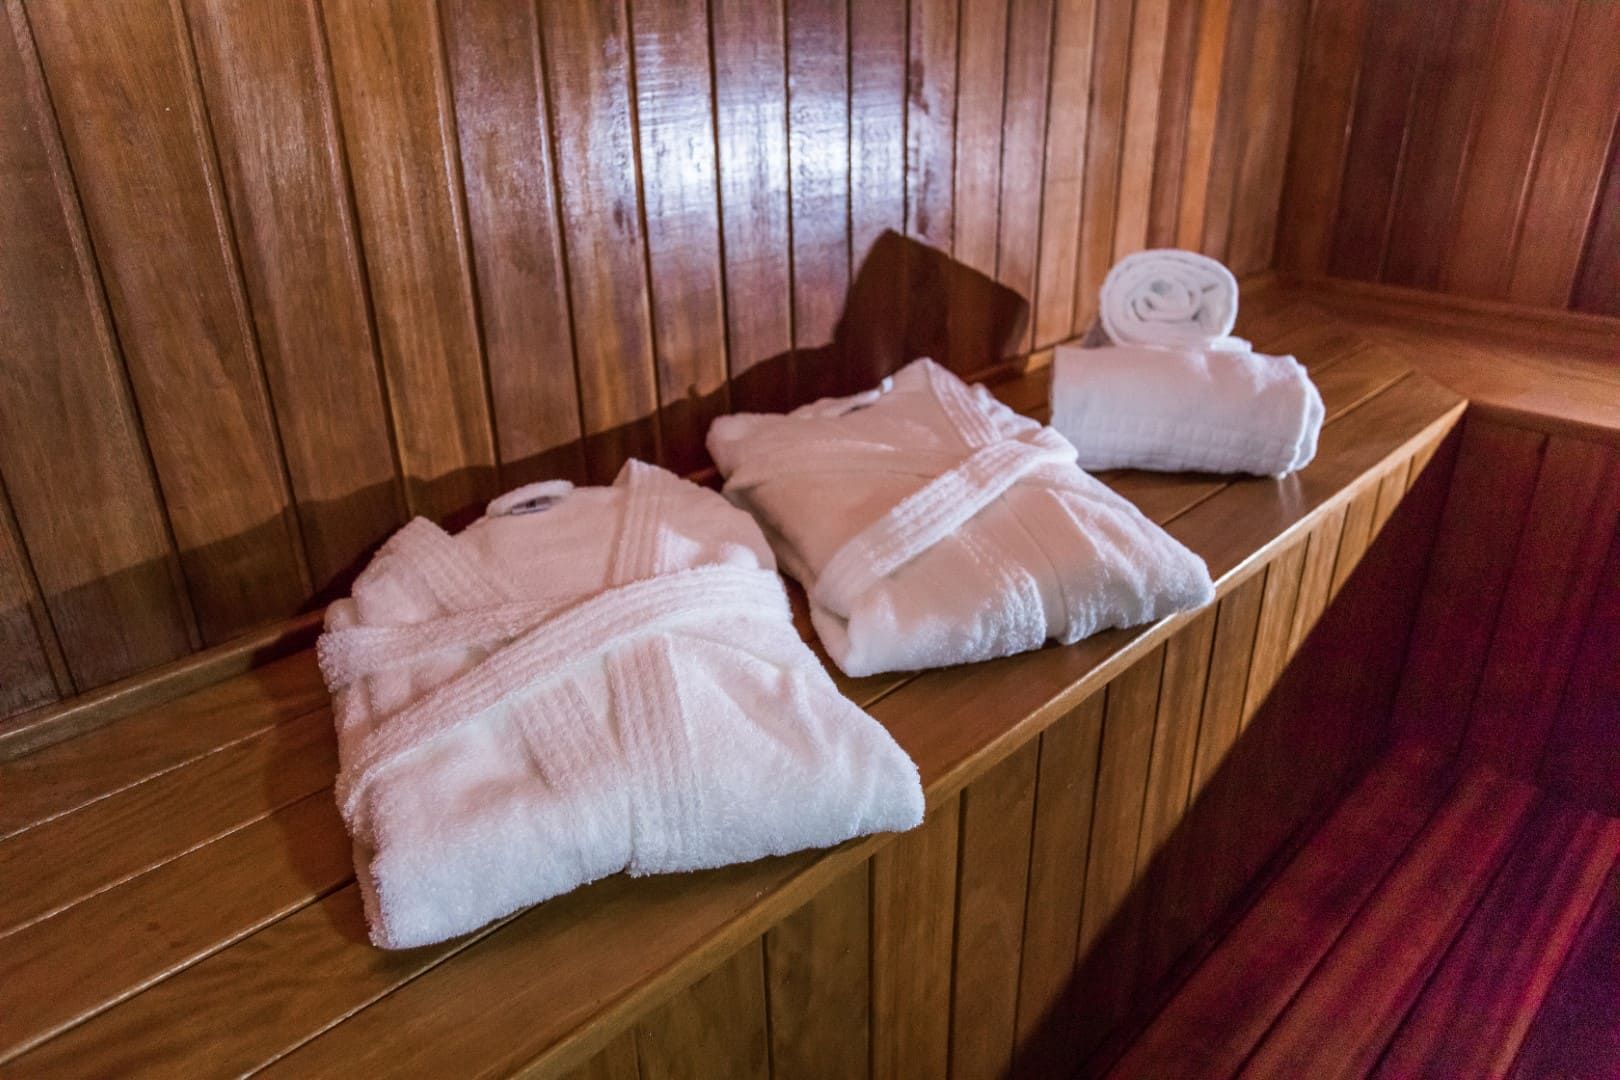 Dois roupões de banho e duas toalhas estão sobre um banco de madeira em uma sauna.